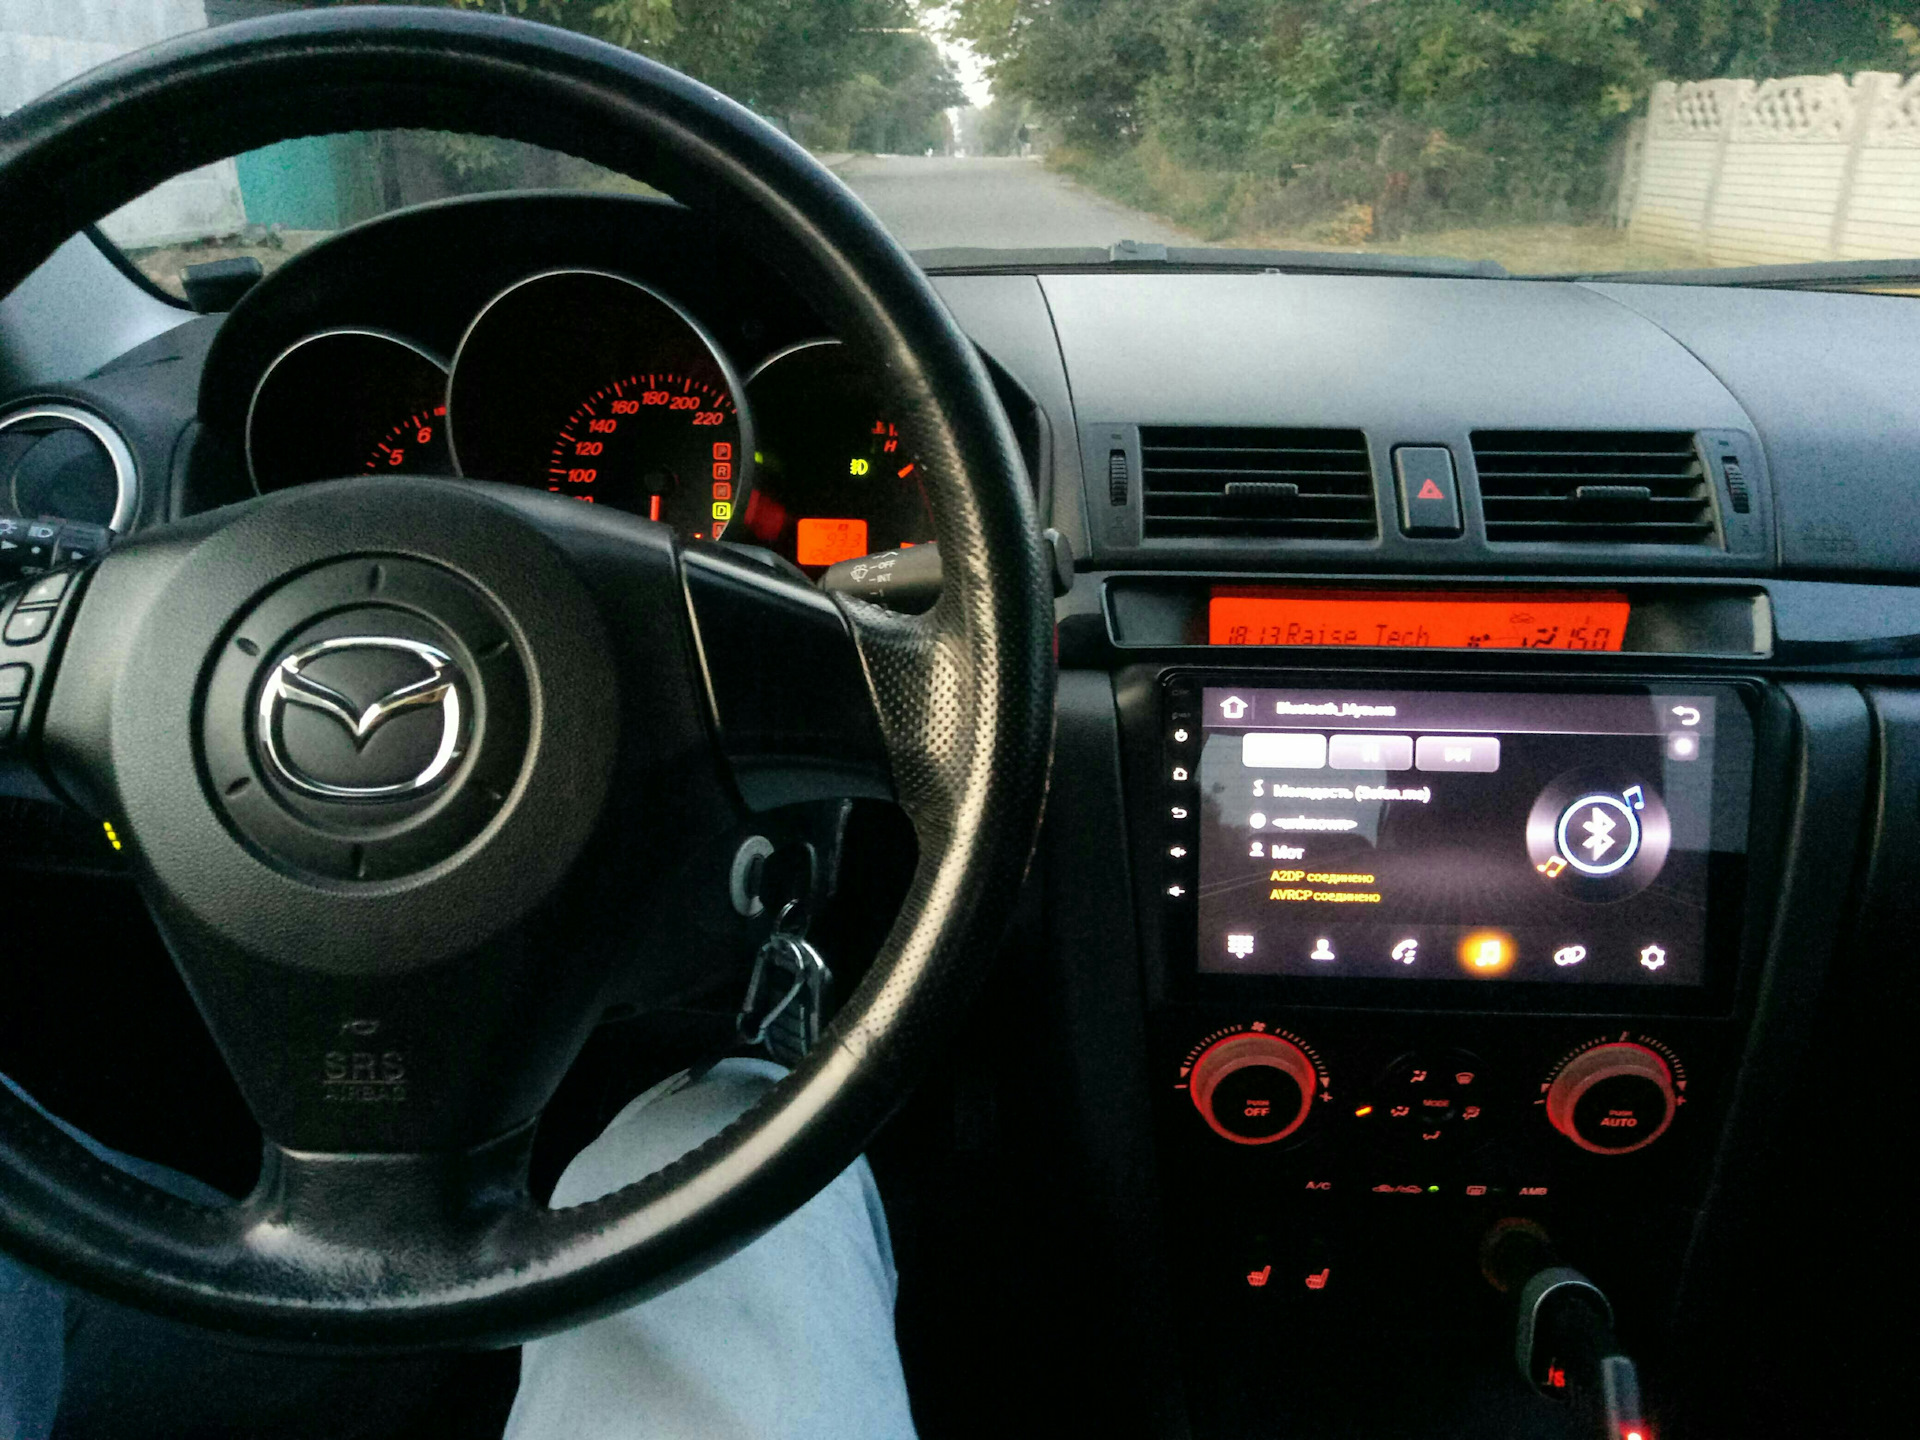 Андроид на мазда 3. Мазда 3 2006 салон магнитола с экраном. Mazda 3 BK салон магнитола с экраном. Мазда 3 2007 год магнитола. Мазда 3 магнитола андроид.